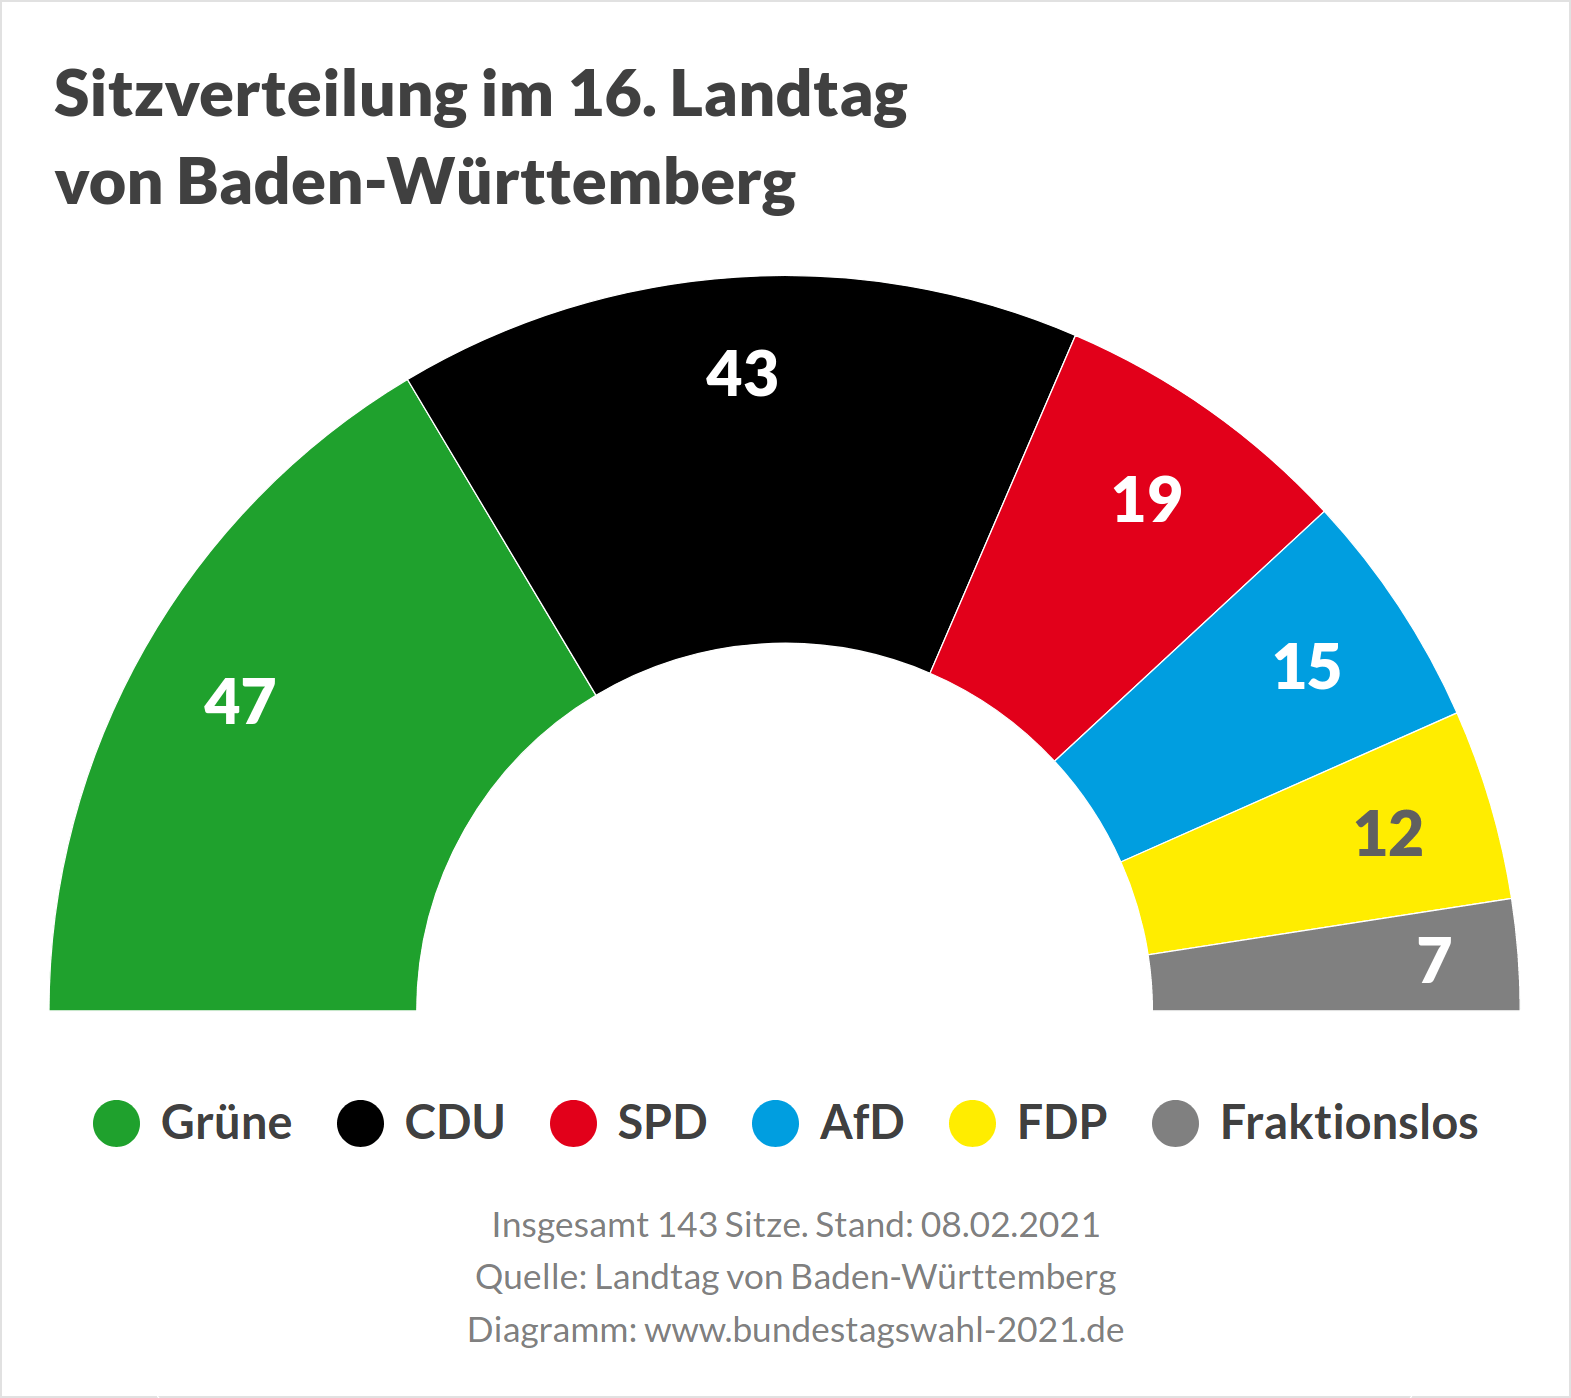 Sitzverteilung im Landtag von Baden-Württemberg vor der Landtagswahl 2021 (Ausgangslage)